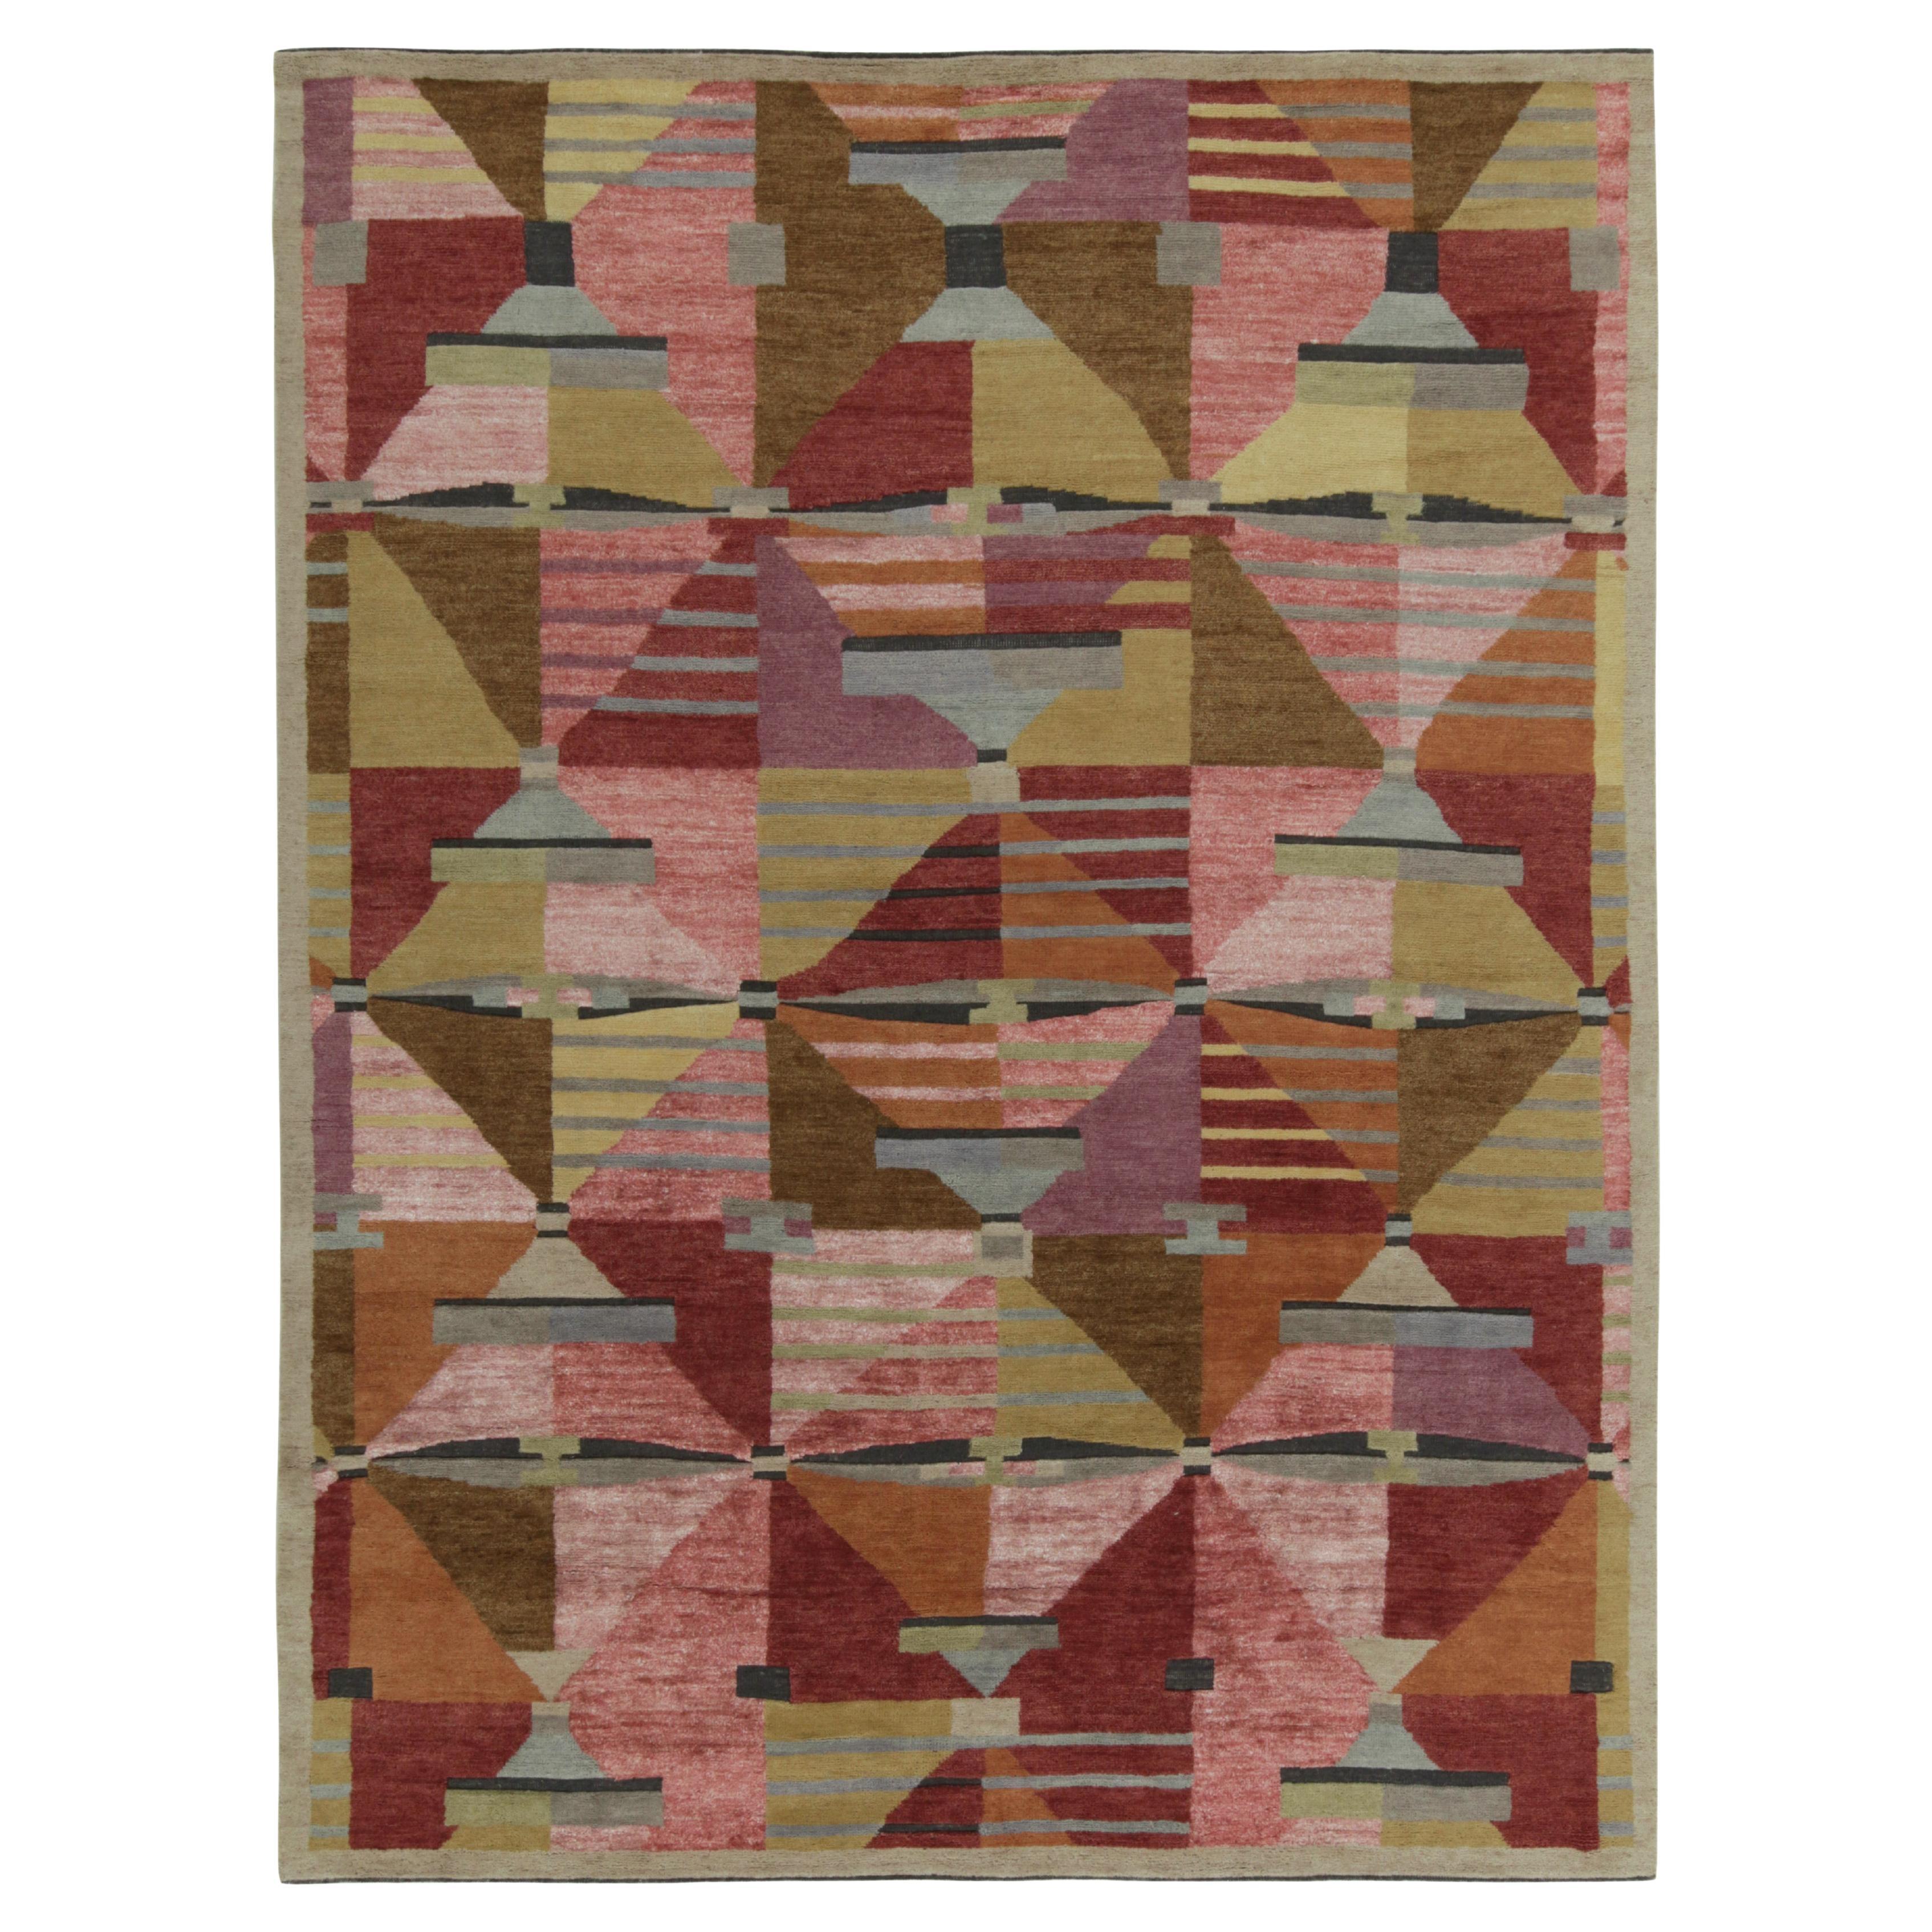 Schwedischer Teppich im Deko-Stil von Teppich & Kilims mit rosa, roten und beige-braunen Mustern